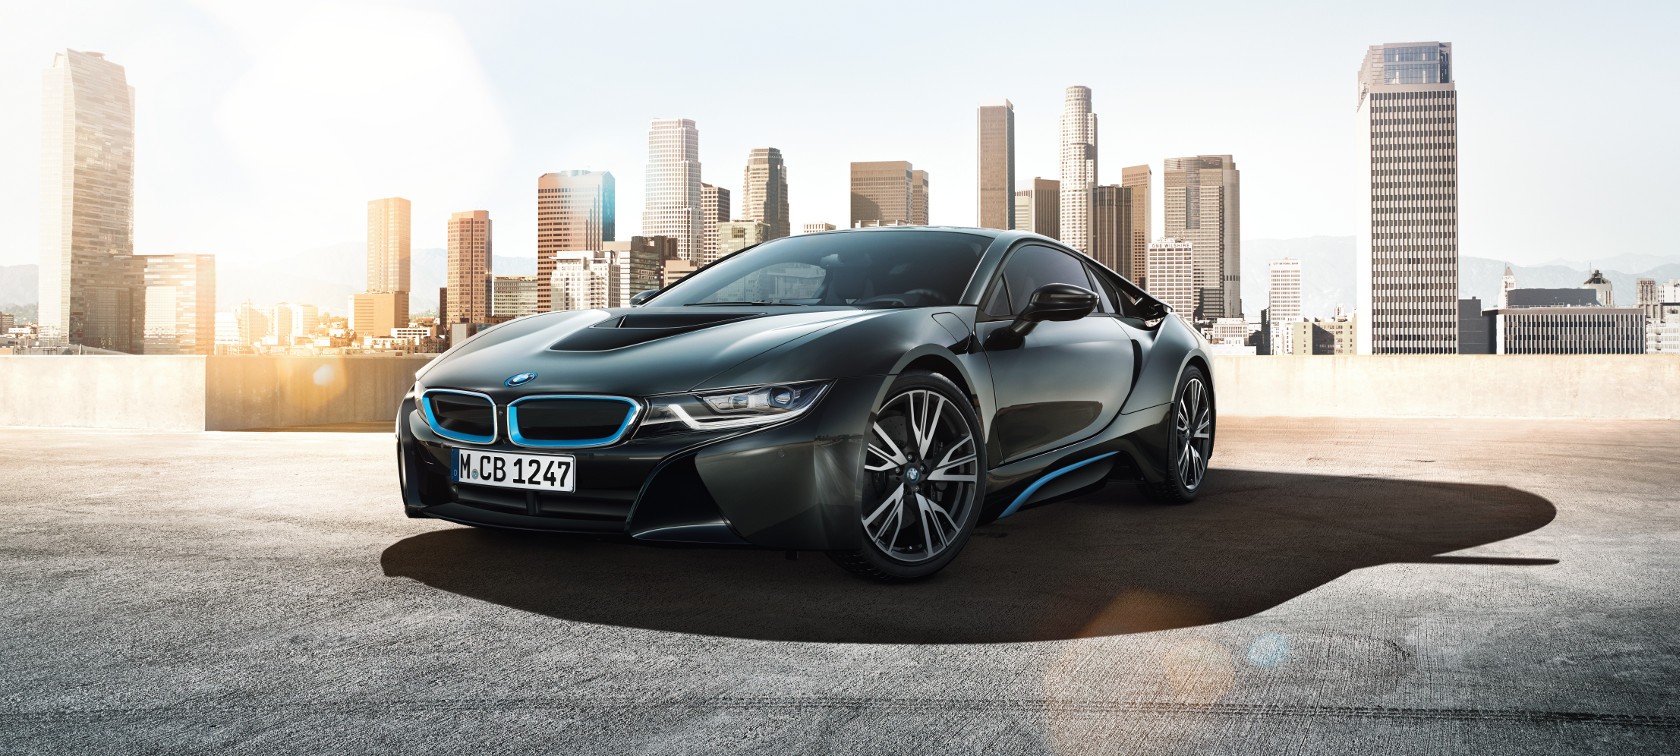 BMW i8 - samochód marzeń dla wielu - przedstawiamy dane techniczne, ceny, opinie, spalanie